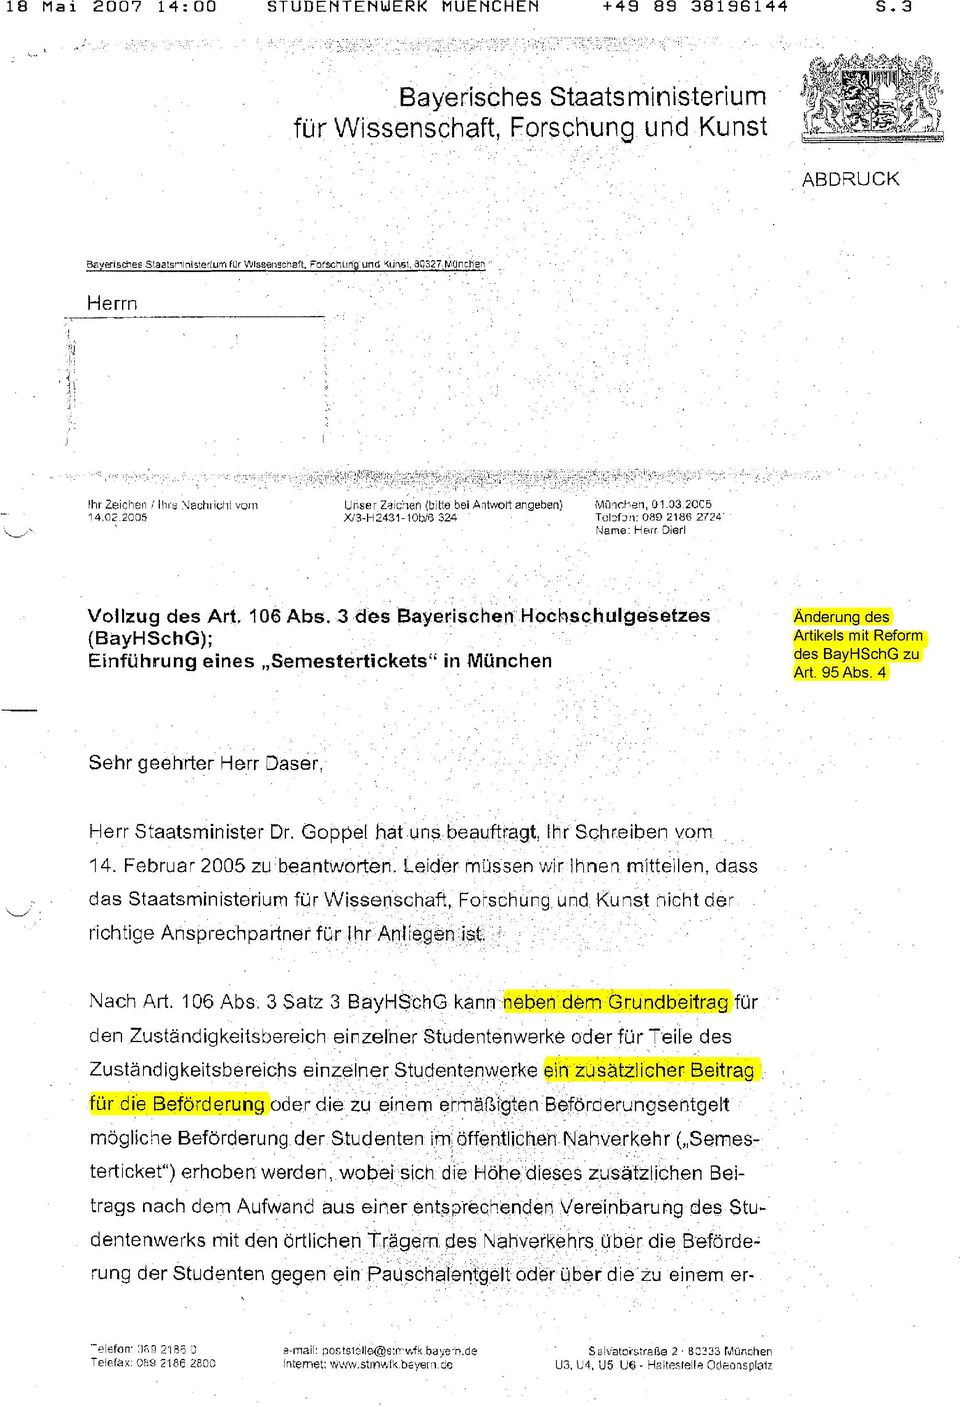 3 des Bayerischen Hochschulgesetzes (BayHSchG); Einführung eines,,semesterticketsfi in München Artikels mit Reform des BayHSchG zu Art. 95 Abs. 4 Sehr geehrter Herr Daser, L/ Herr Staatsminister Dr.